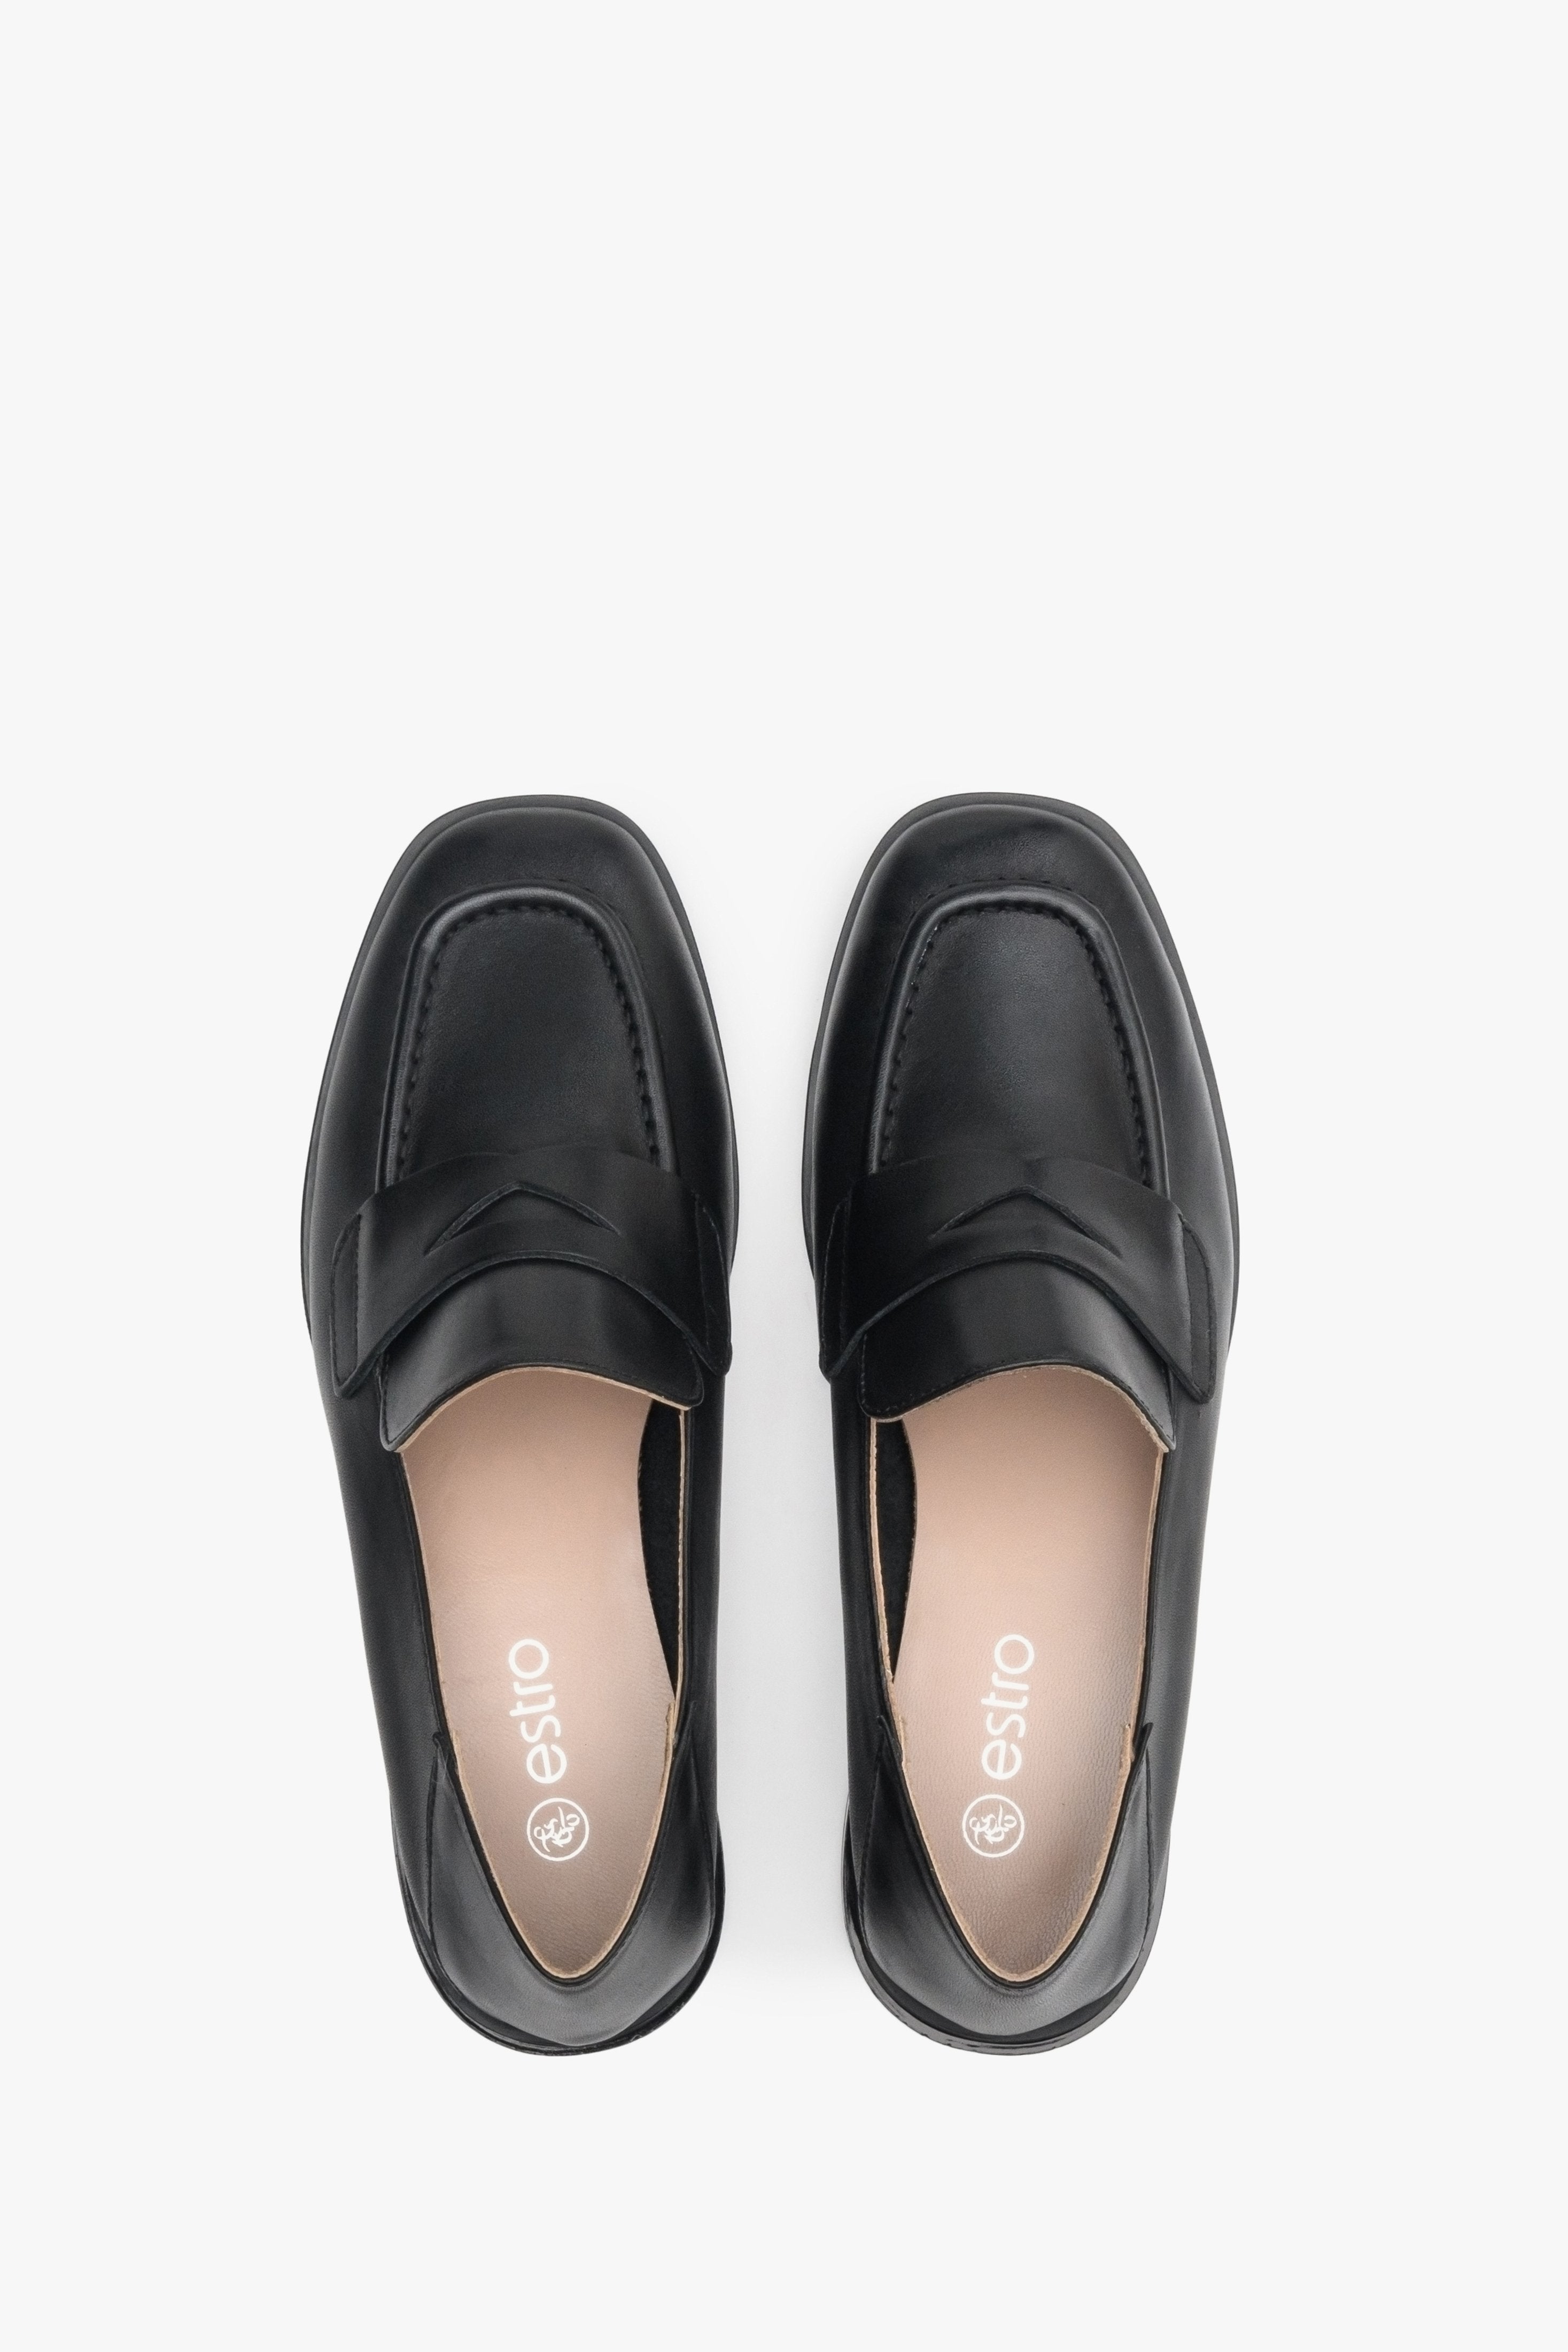 Loafersy damskie w kolorze czarnym ze skóry naturalnej Estro - prezentacja obuwia z góry,